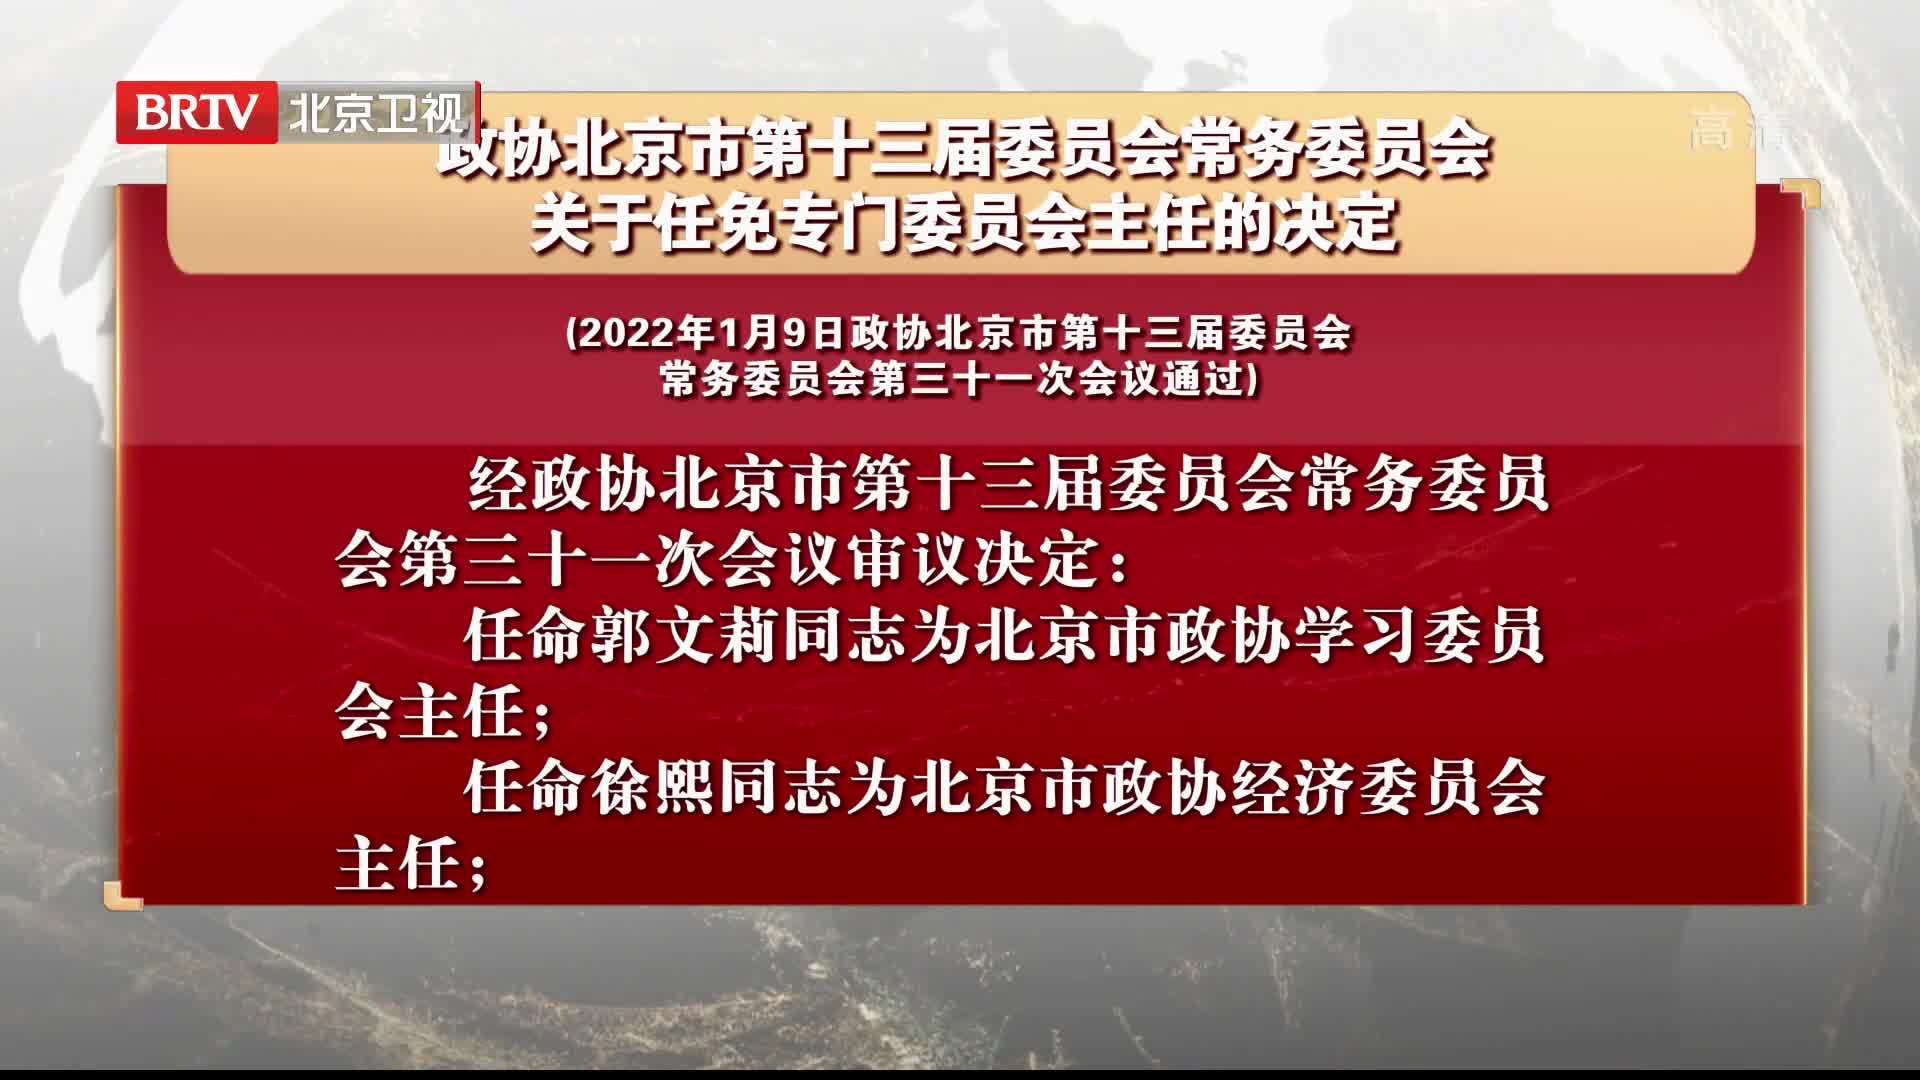 政协北京市第十三届委员会常务委员会关于任免专门委员会主任的决定